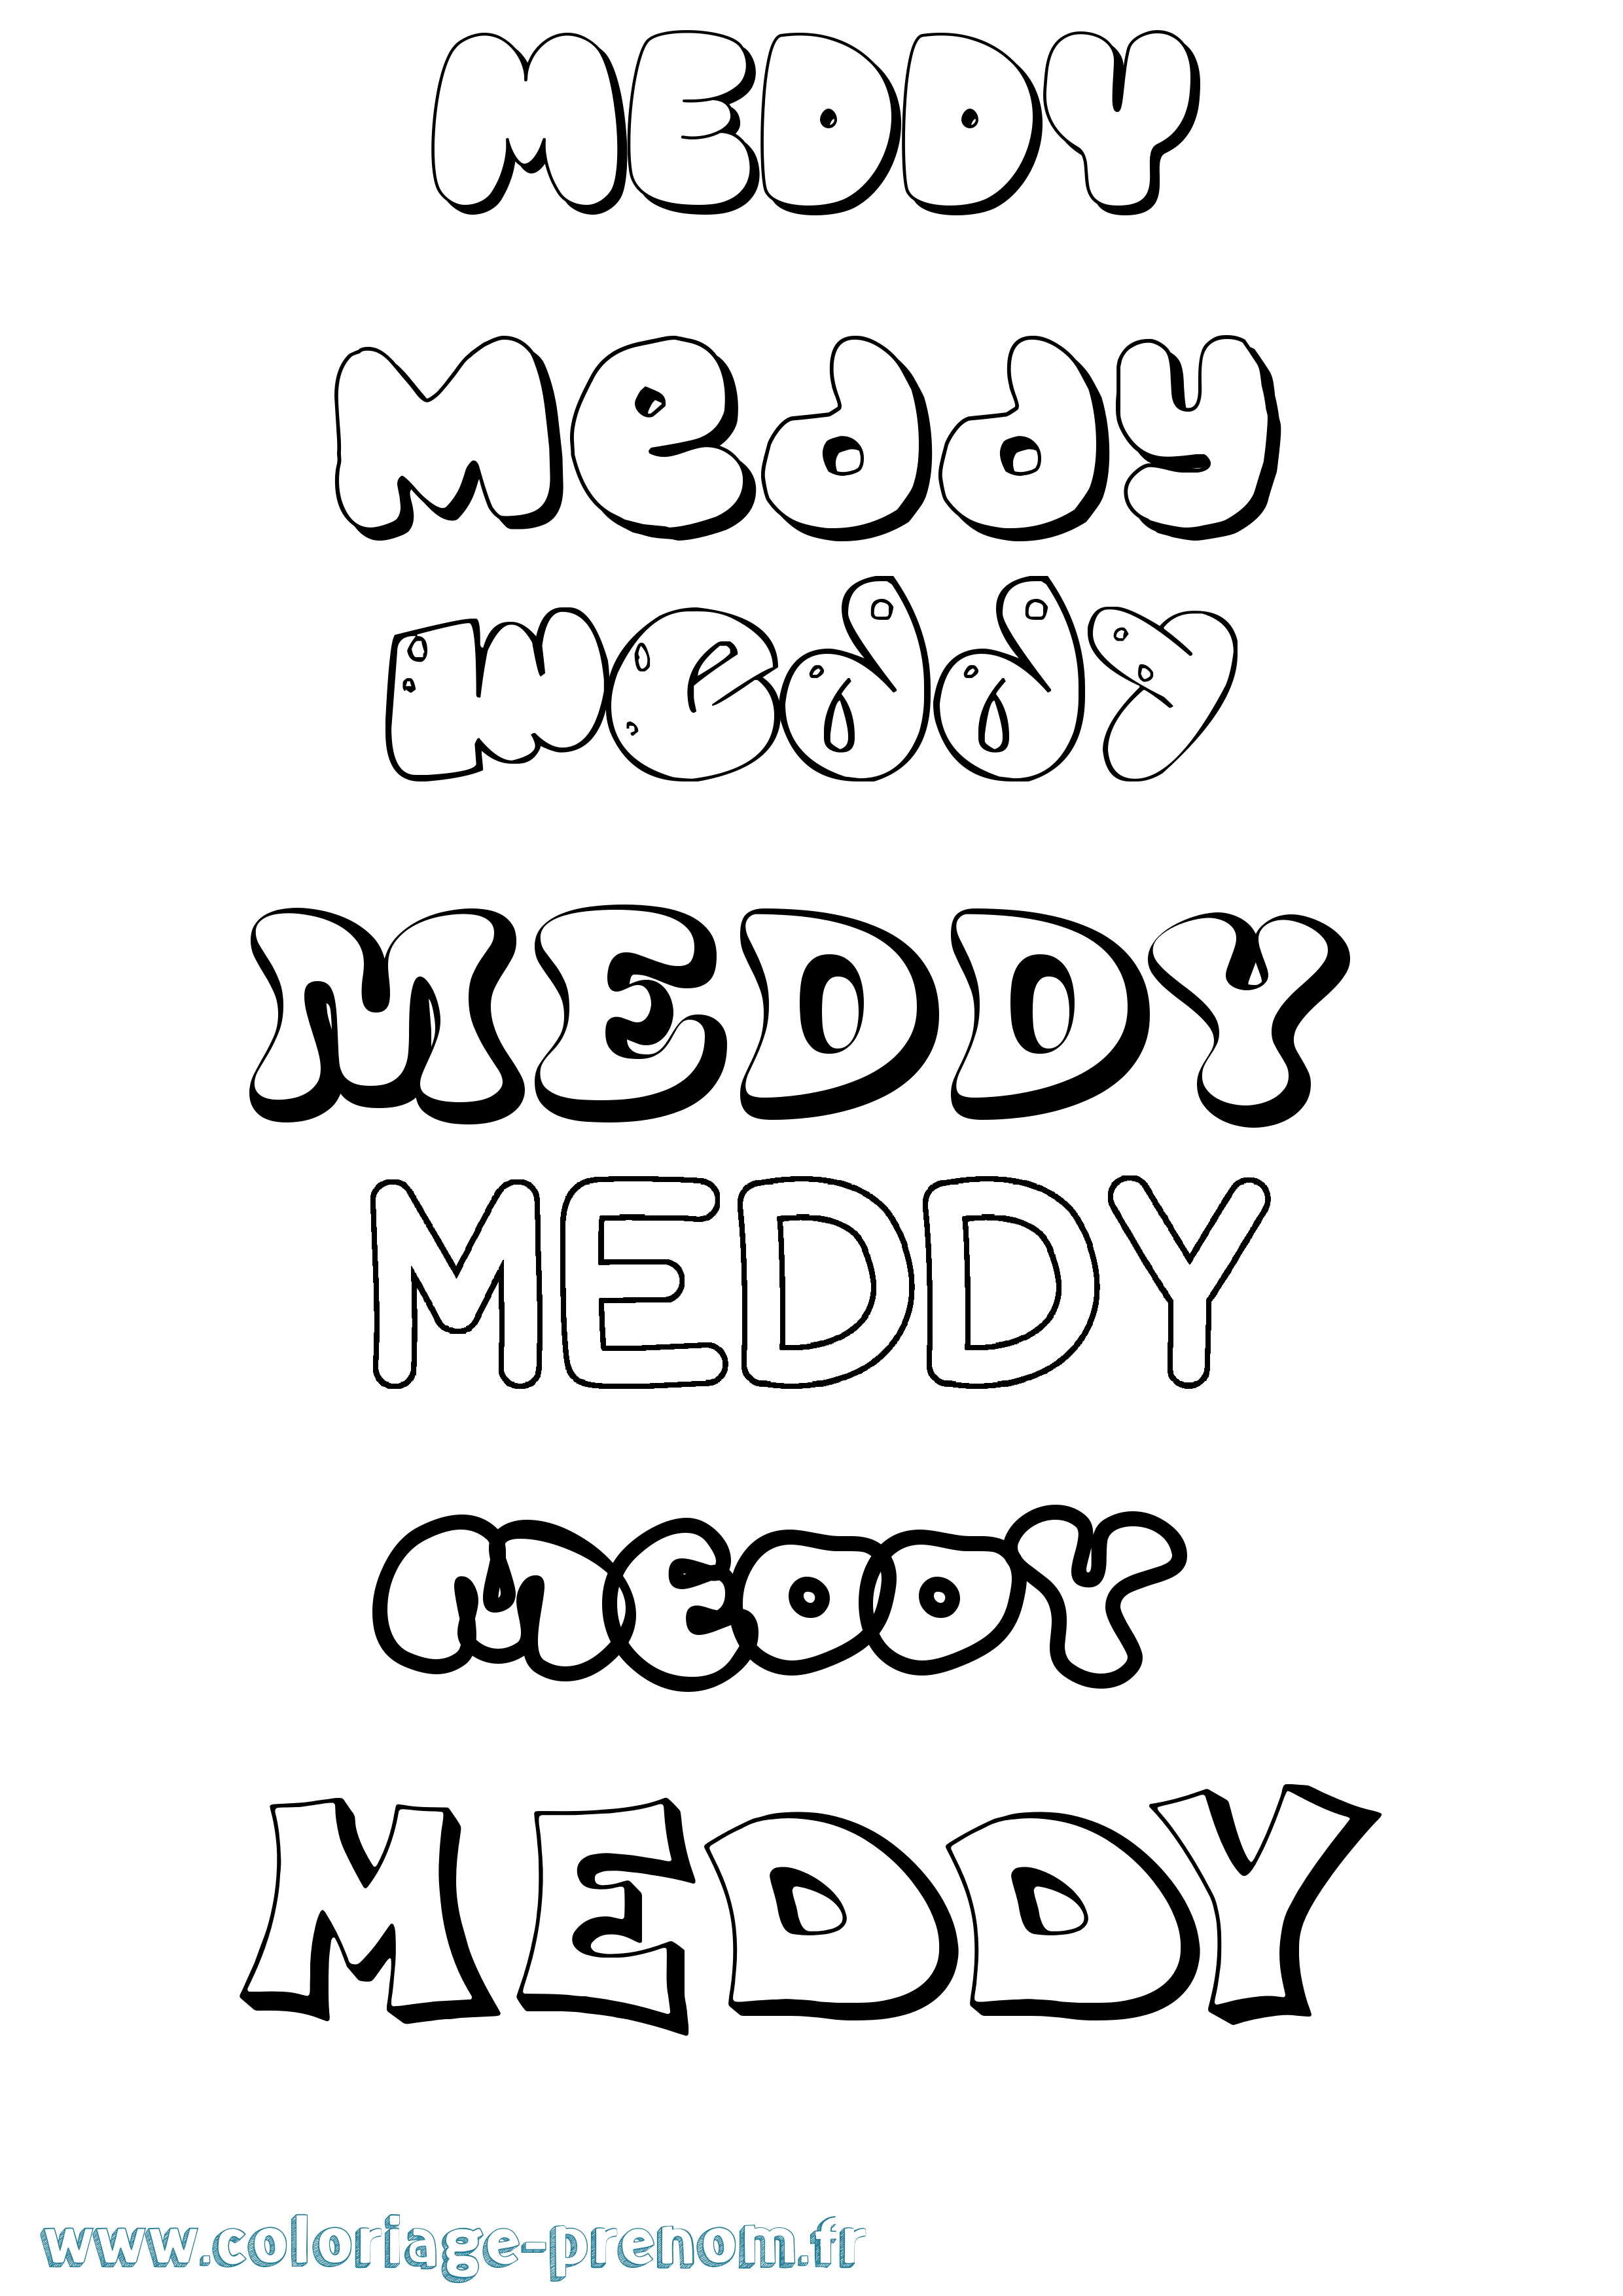 Coloriage prénom Meddy Bubble